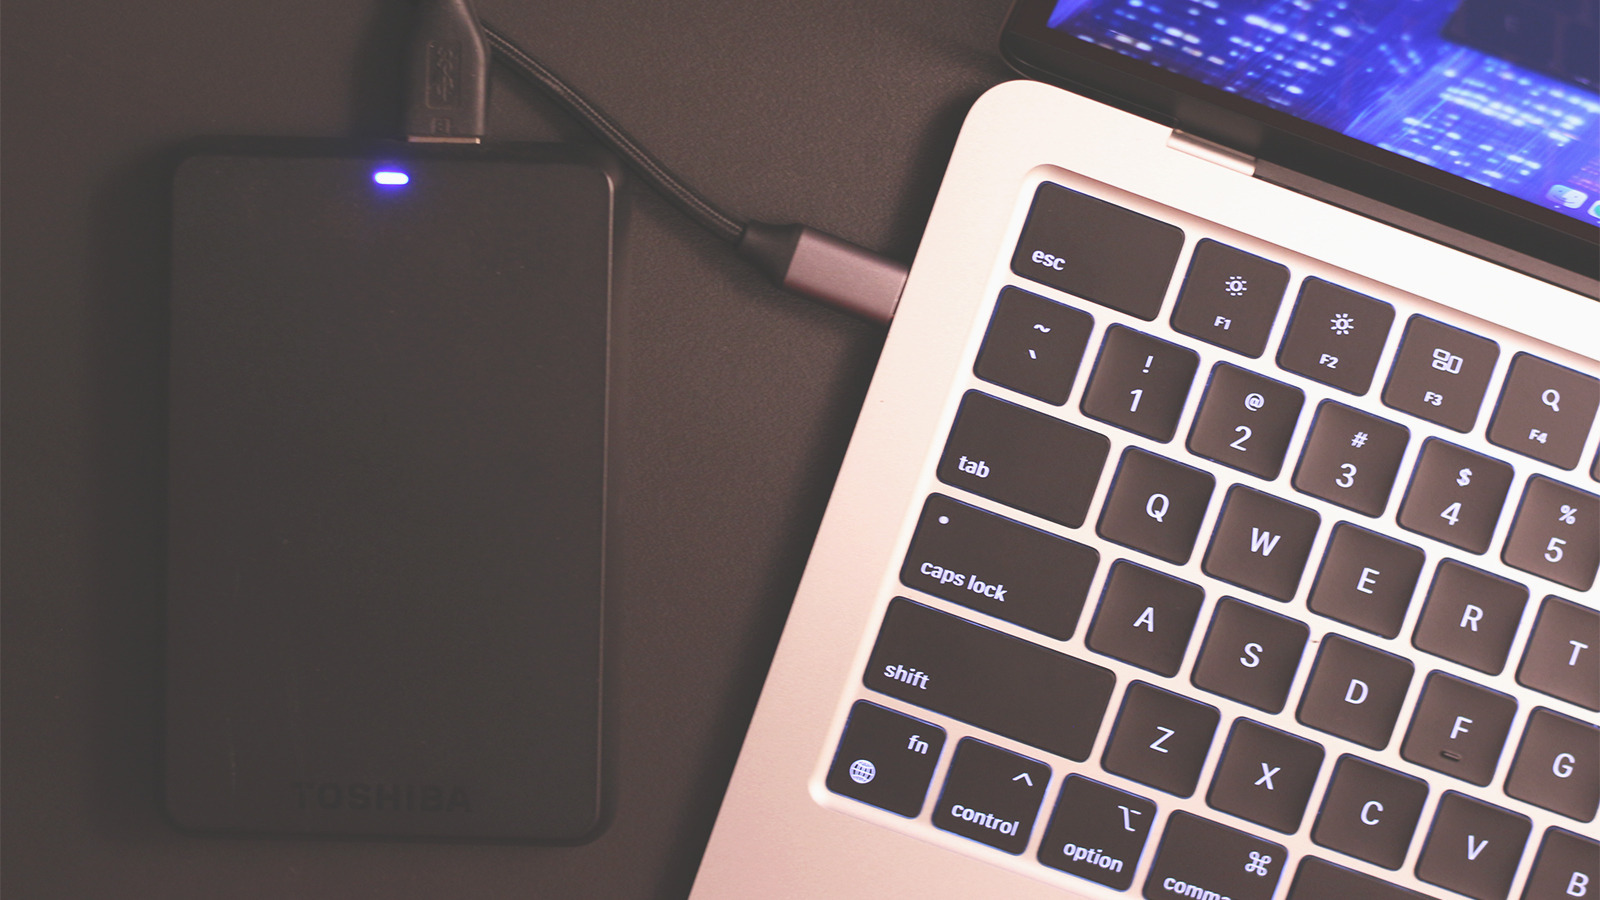 Cómo expulsar una unidad USB de tu Mac (y por qué no funciona)